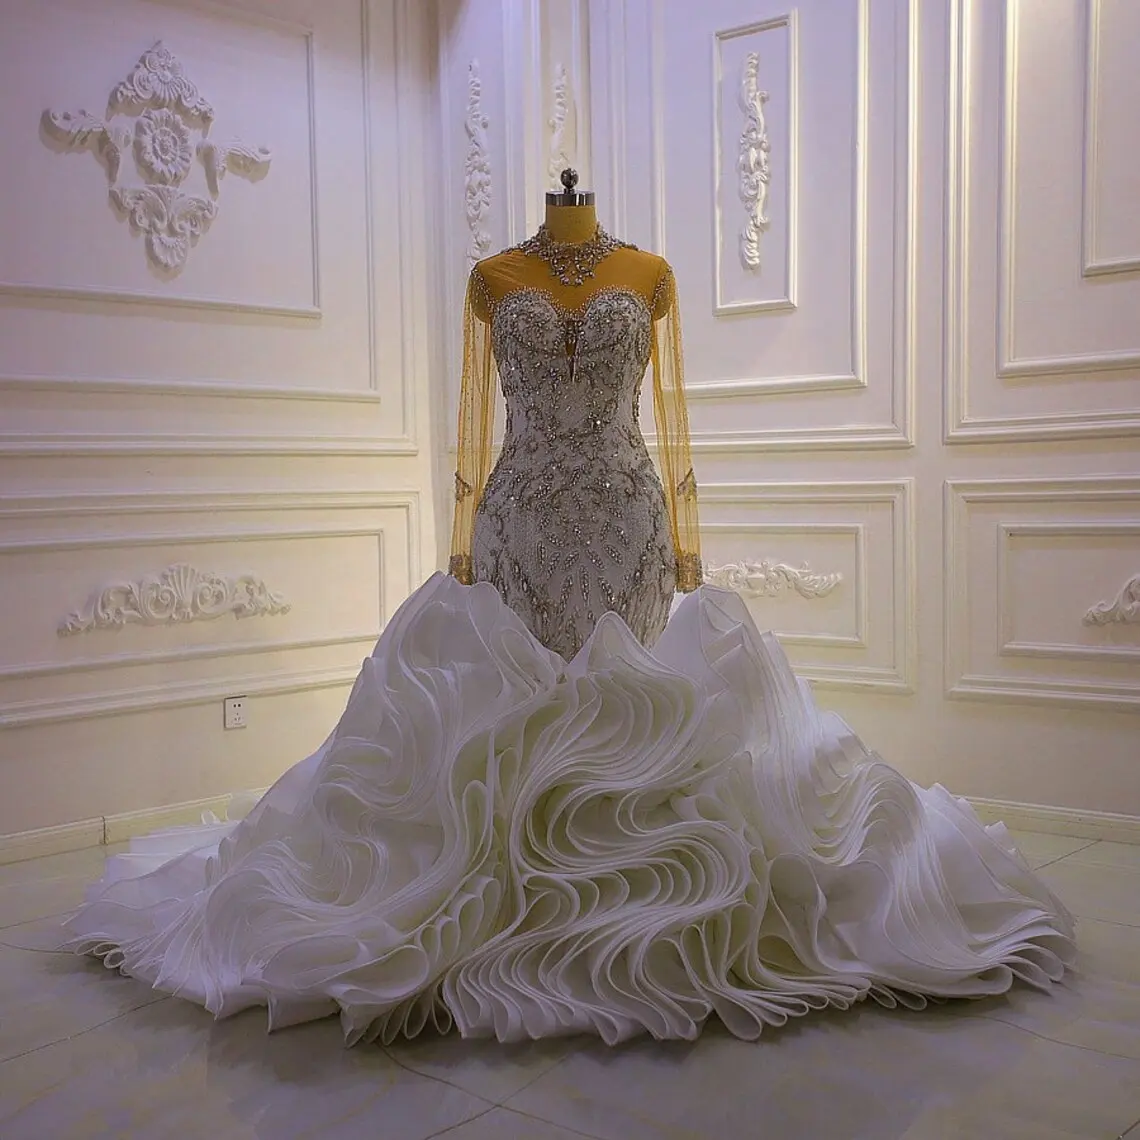 Gaun pernikahan mewah bermanik kristal, gaun pernikahan mewah kerah tinggi lengan panjang berkilau bahan terompet dengan rok lipit